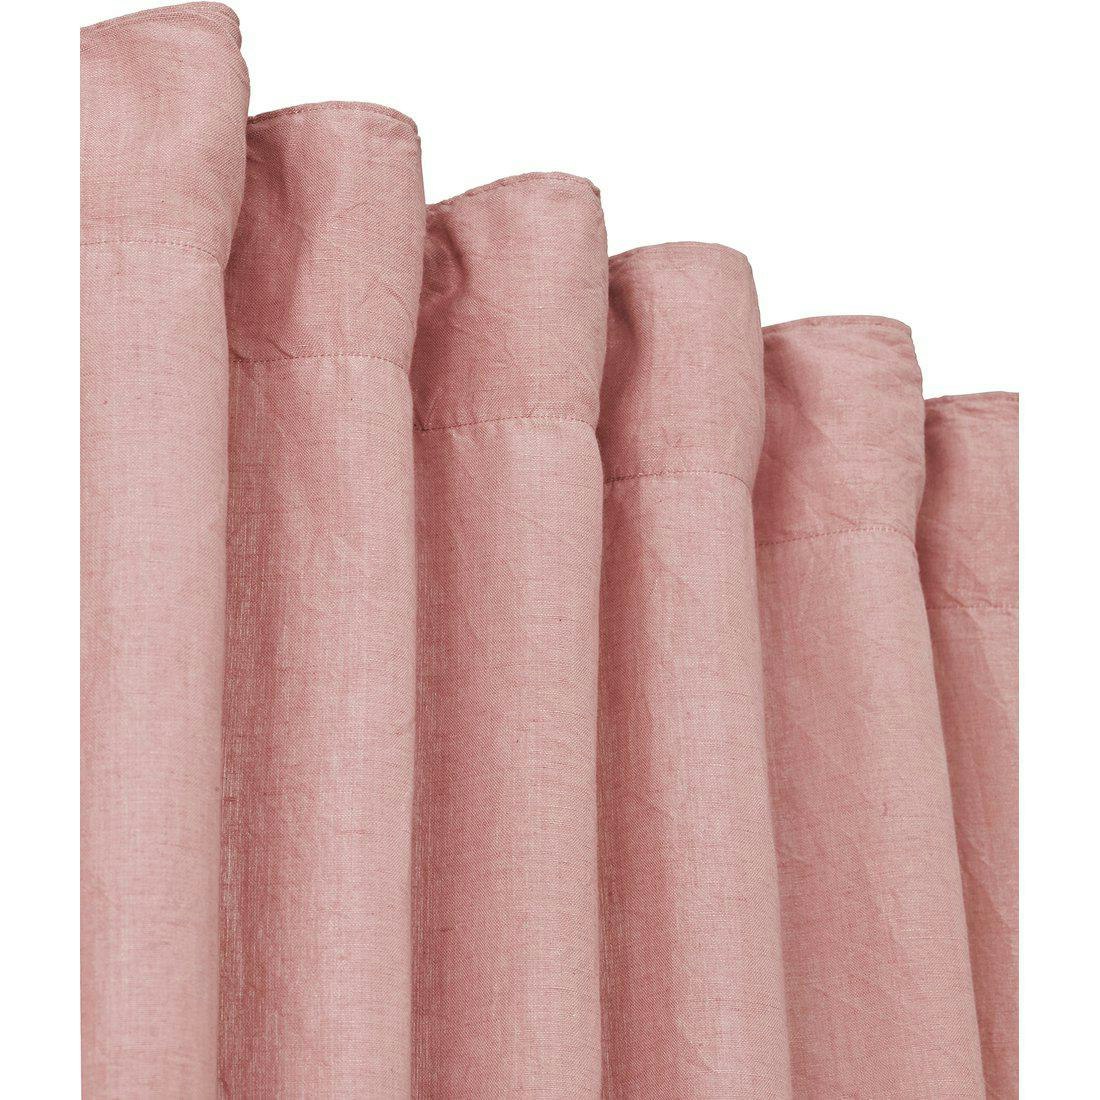 Svanefors Amie 2 pack i färgen rose multibandslängder 2 x 140 x 280 CM